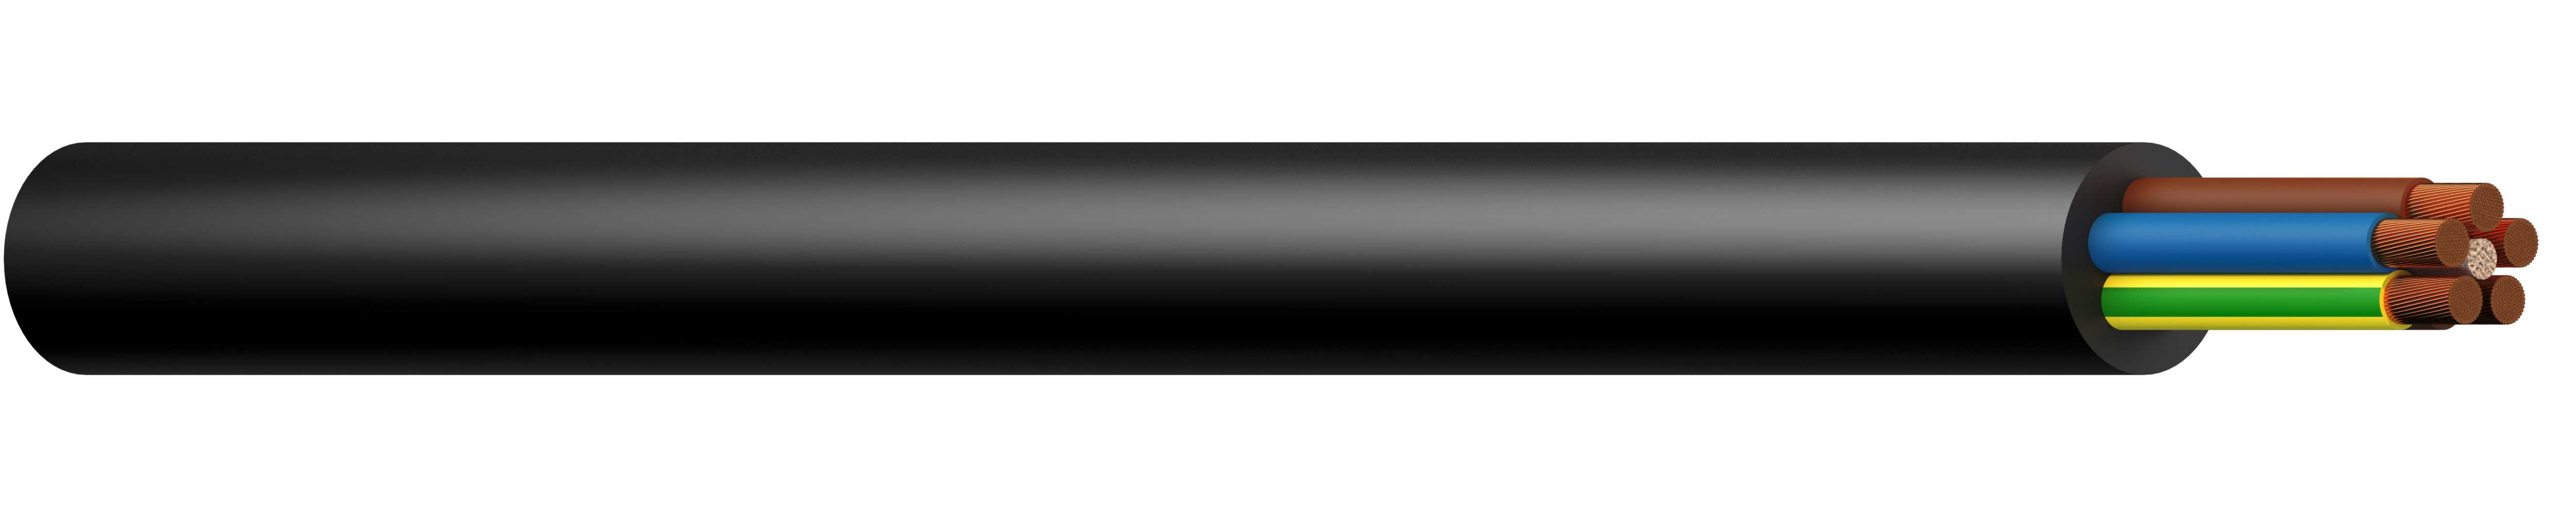 Draka - H07RN-F 3G4 mm² Sort (TRM)  Gummikabel